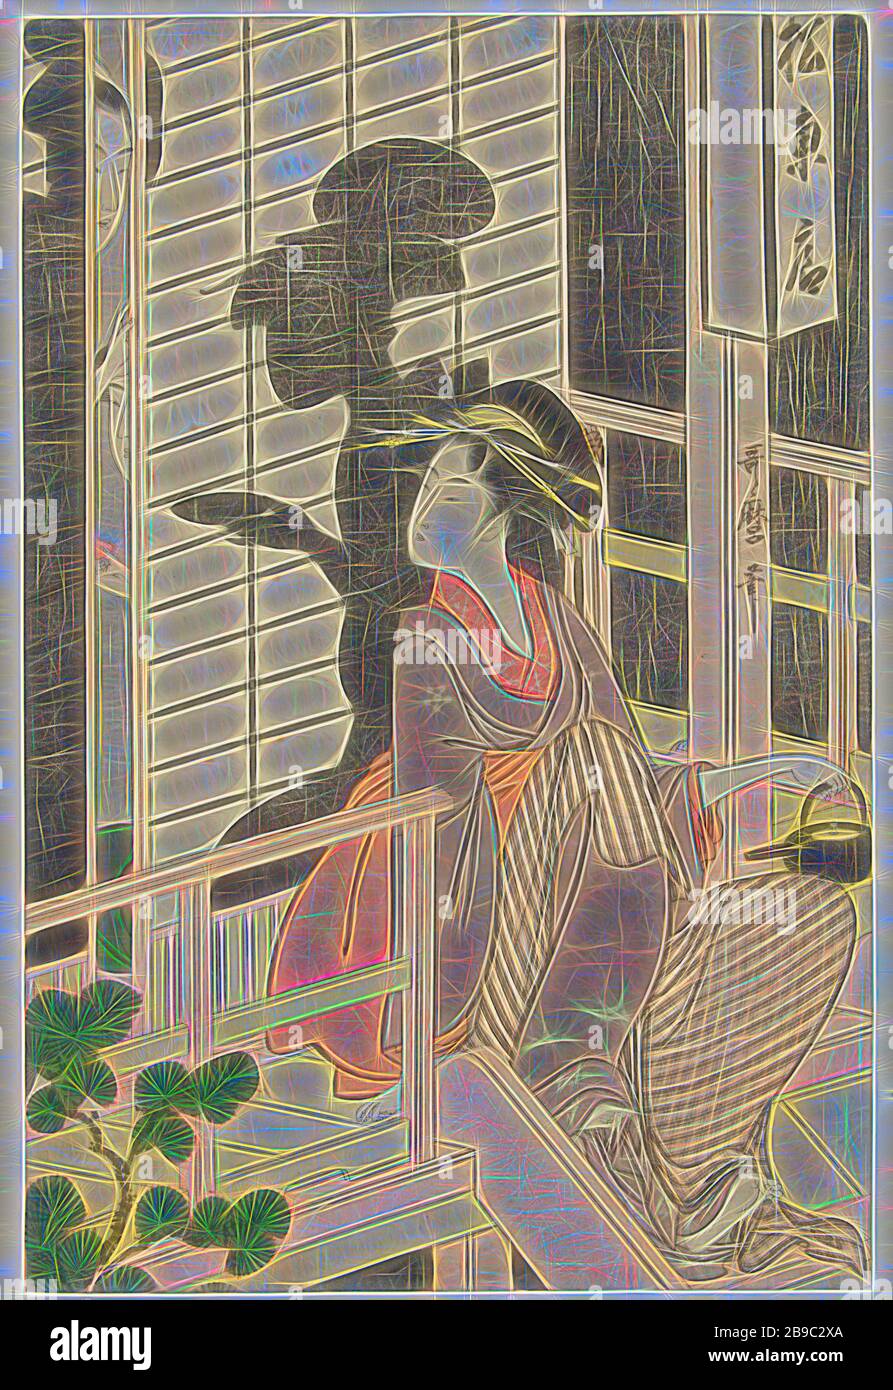 Kellnerin des Teehauses Matsu Higashiya, Kellnerin mit Sake Wasserkocher in der linken Hand, auf der Veranda eines Teehauses sitzend, mit Blick auf die Schiebetür, wo zwei Frauen und ihr Schatten sichtbar sind., Kitagawa Utamaro (auf Objekt erwähnt), Japan, 1792-1800, Papier, Farbholzschnitt, h 377 mm × w 250 mm, neu von Gibon, Design von warmem, fröhlichem Leuchten von Helligkeit und Lichtstrahlen. Klassische Kunst mit moderner Note neu erfunden. Fotografie, inspiriert vom Futurismus, die dynamische Energie moderner Technologie, Bewegung, Geschwindigkeit und Kultur revolutionieren. Stockfoto